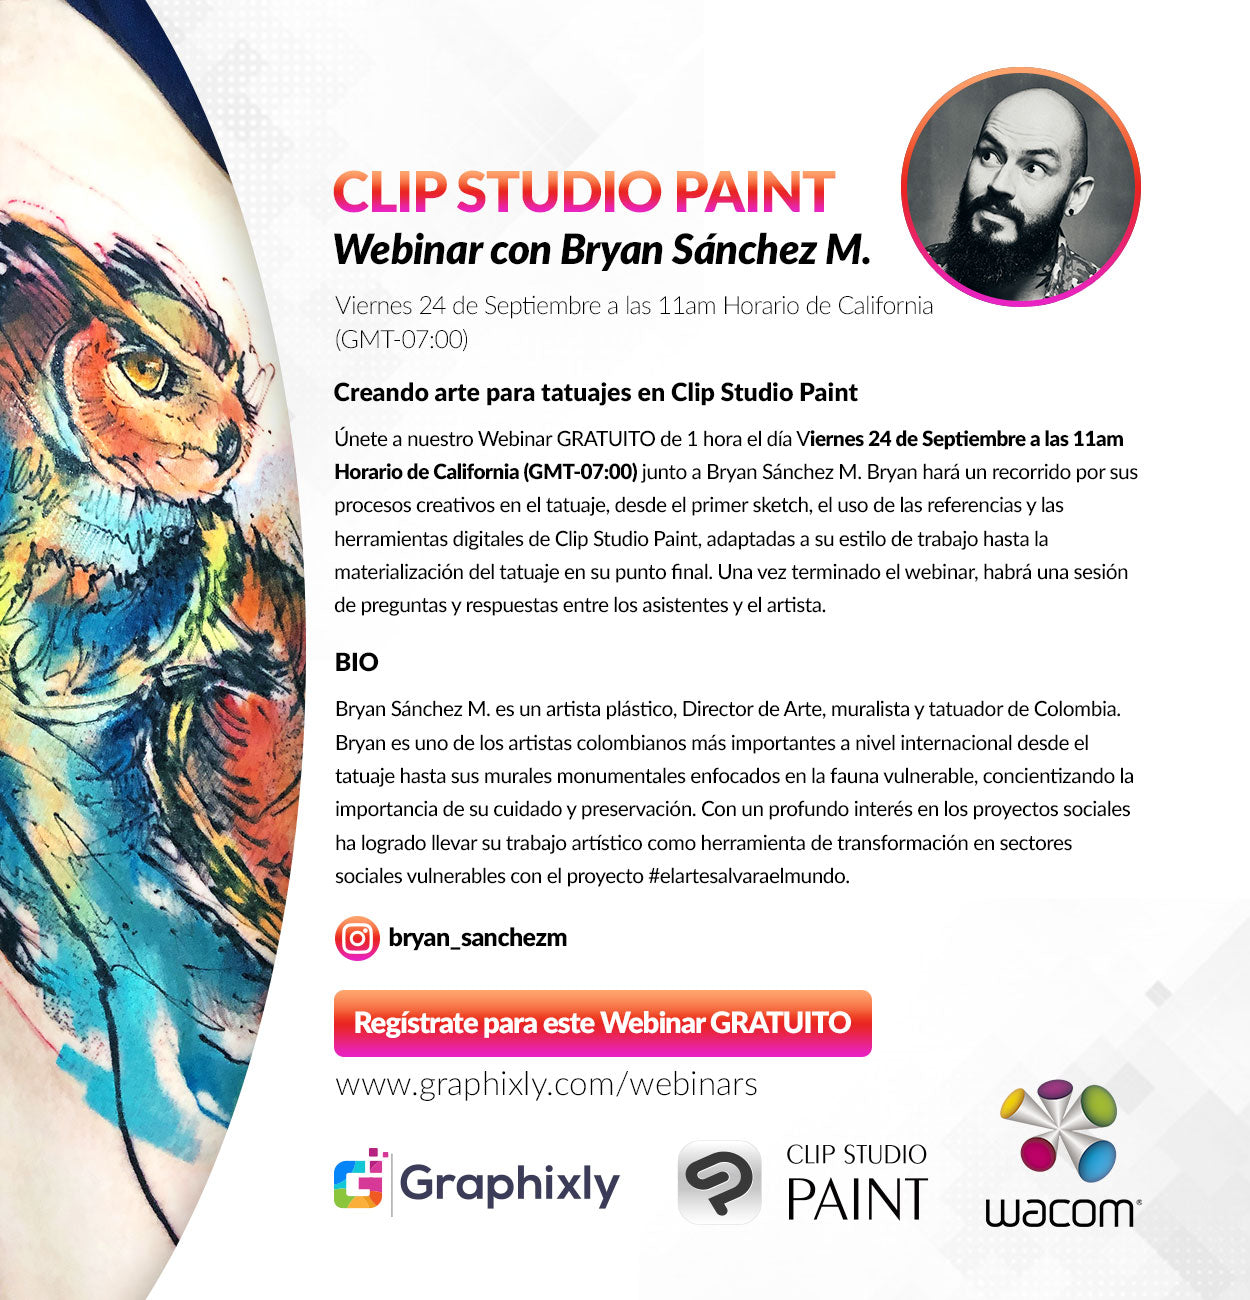 Webinar en español - Creando arte para tatuajes en Clip Studio Paint con Bryan Sánchez